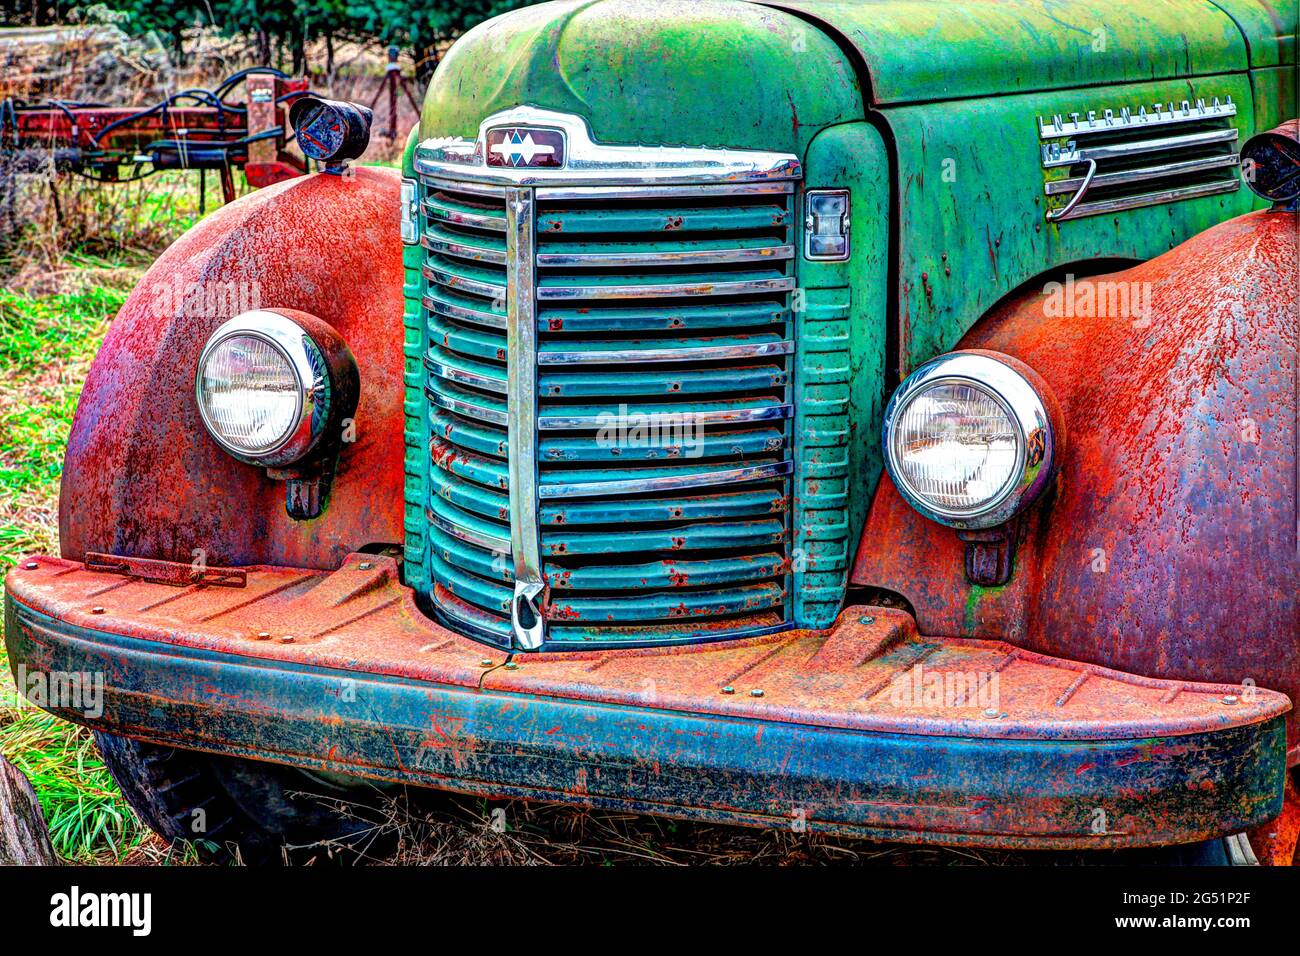 Dettaglio del vecchio camion arrugginito abbandonato, Oversiel, Michigan, USA Foto Stock